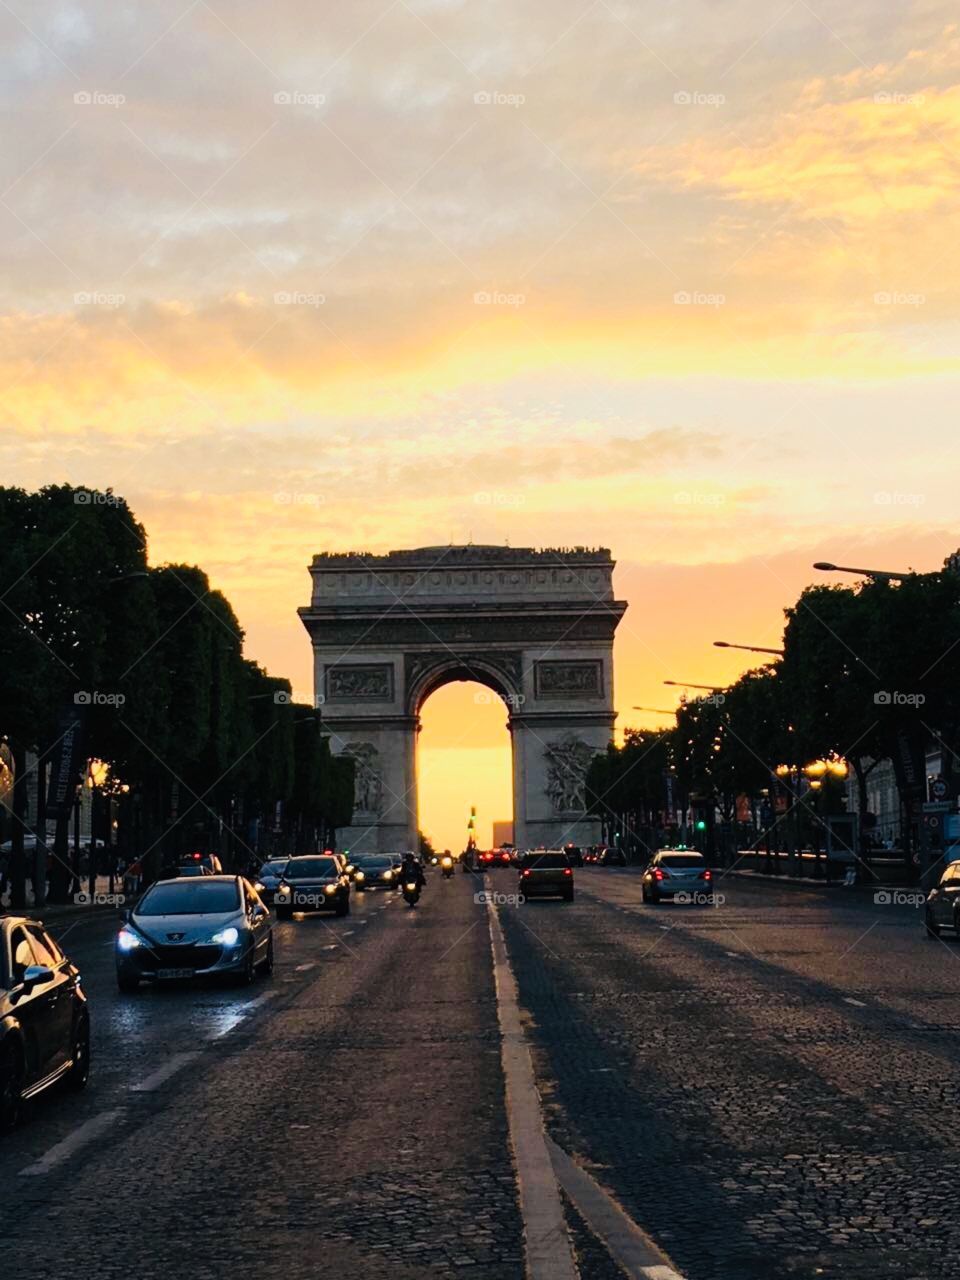 Paris, Arco do Triunfo 